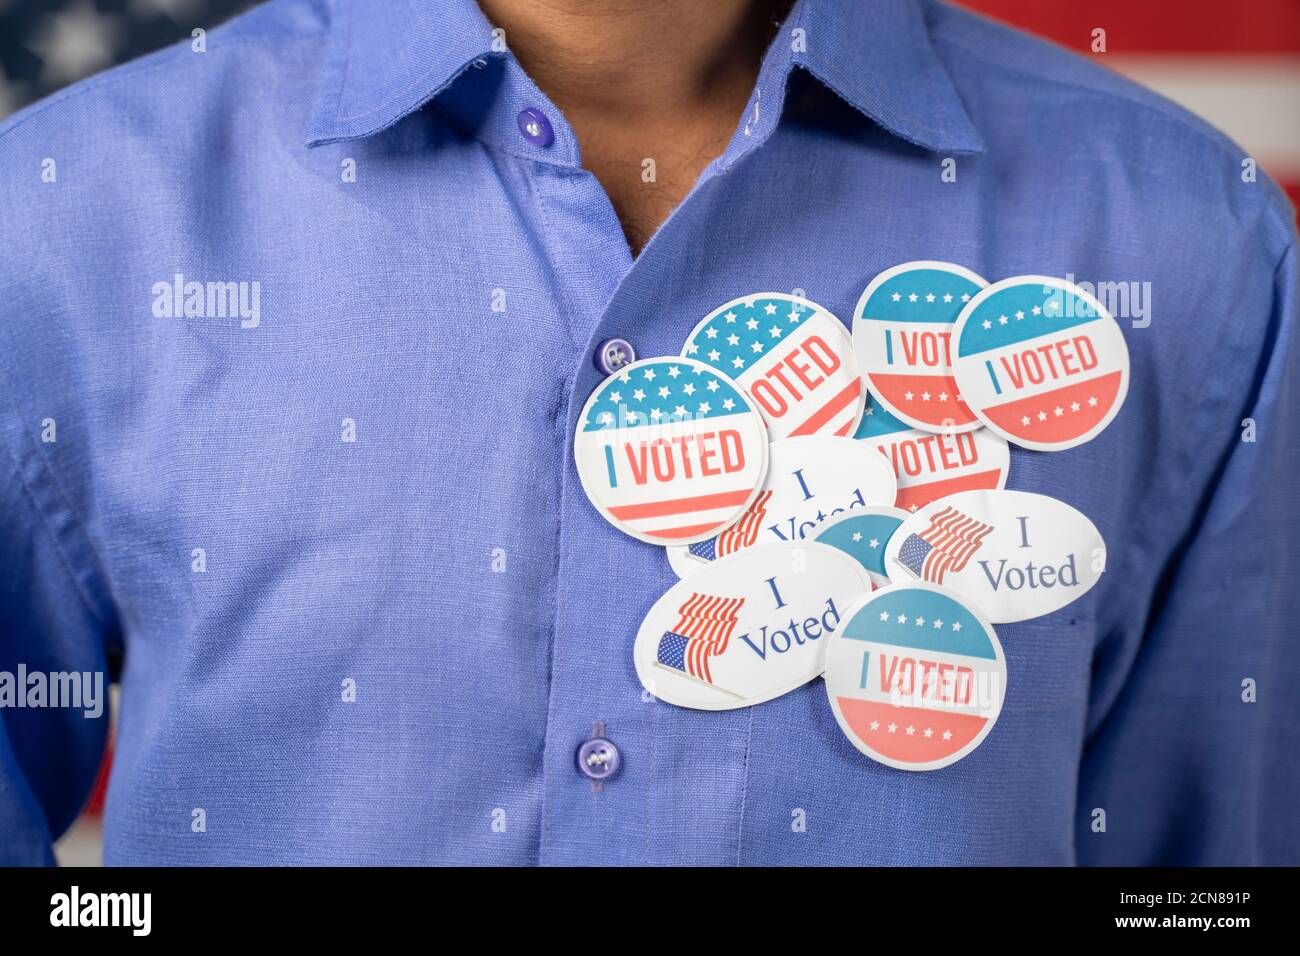 Nahaufnahme von mehreren Sticker auf blauem Hemd - Konzept des Wahlbetrugs der US-Wähler durch die Platzierung von mehreren Sticker zur Abstimmung Stockfoto